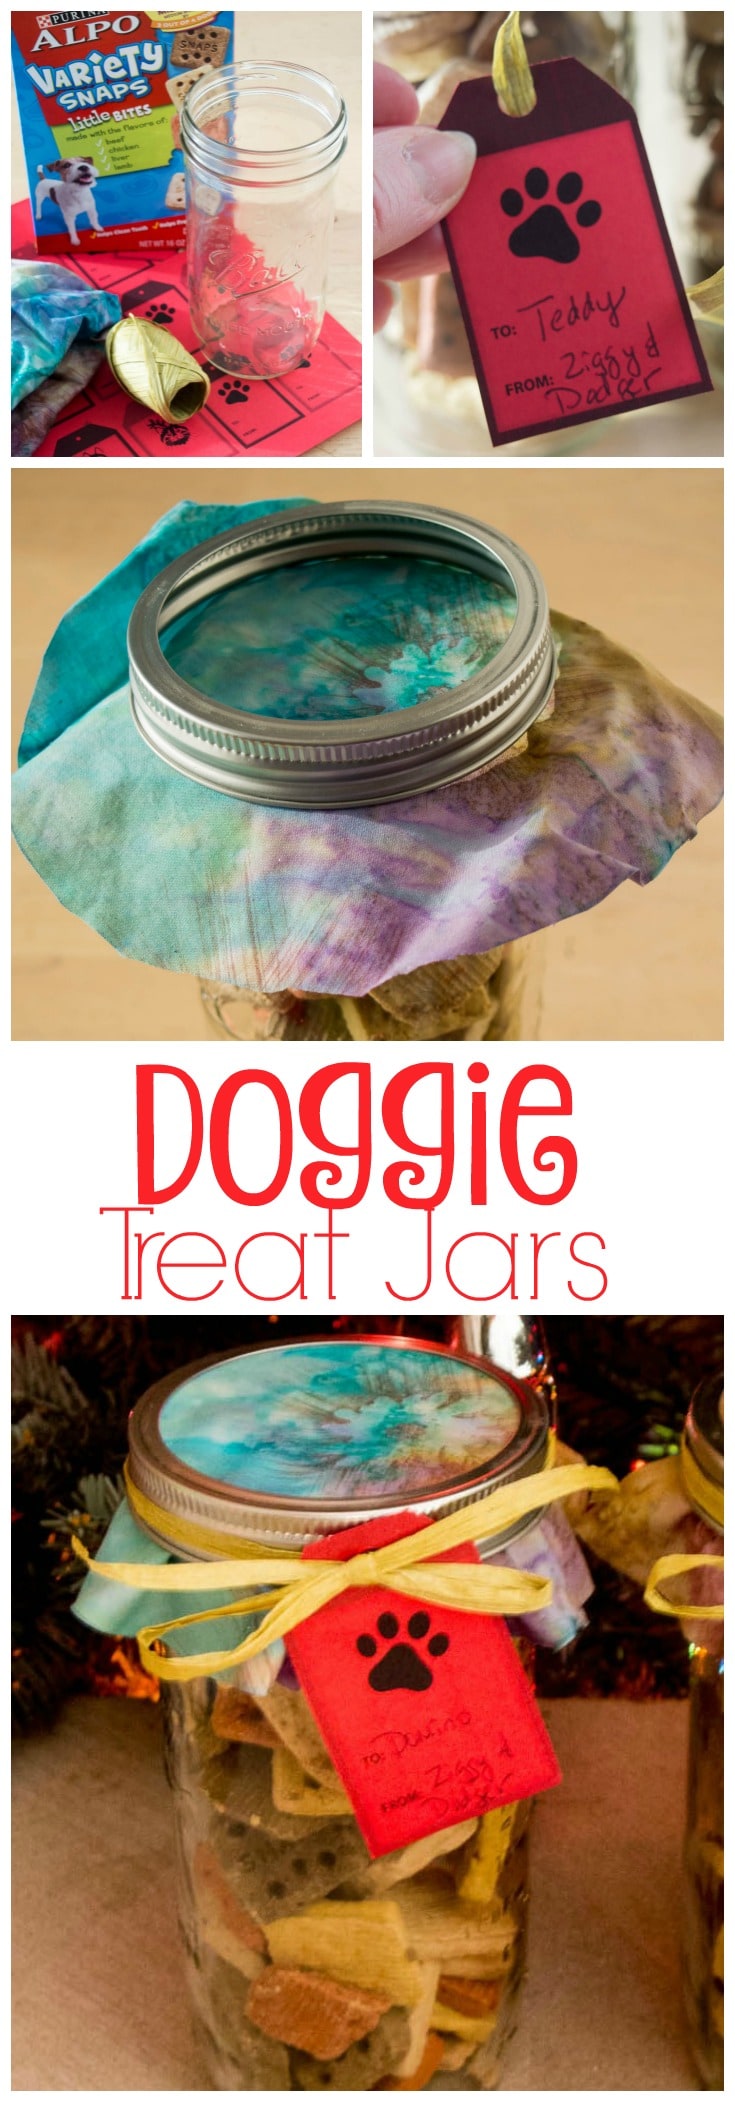 Doggie treat jars.